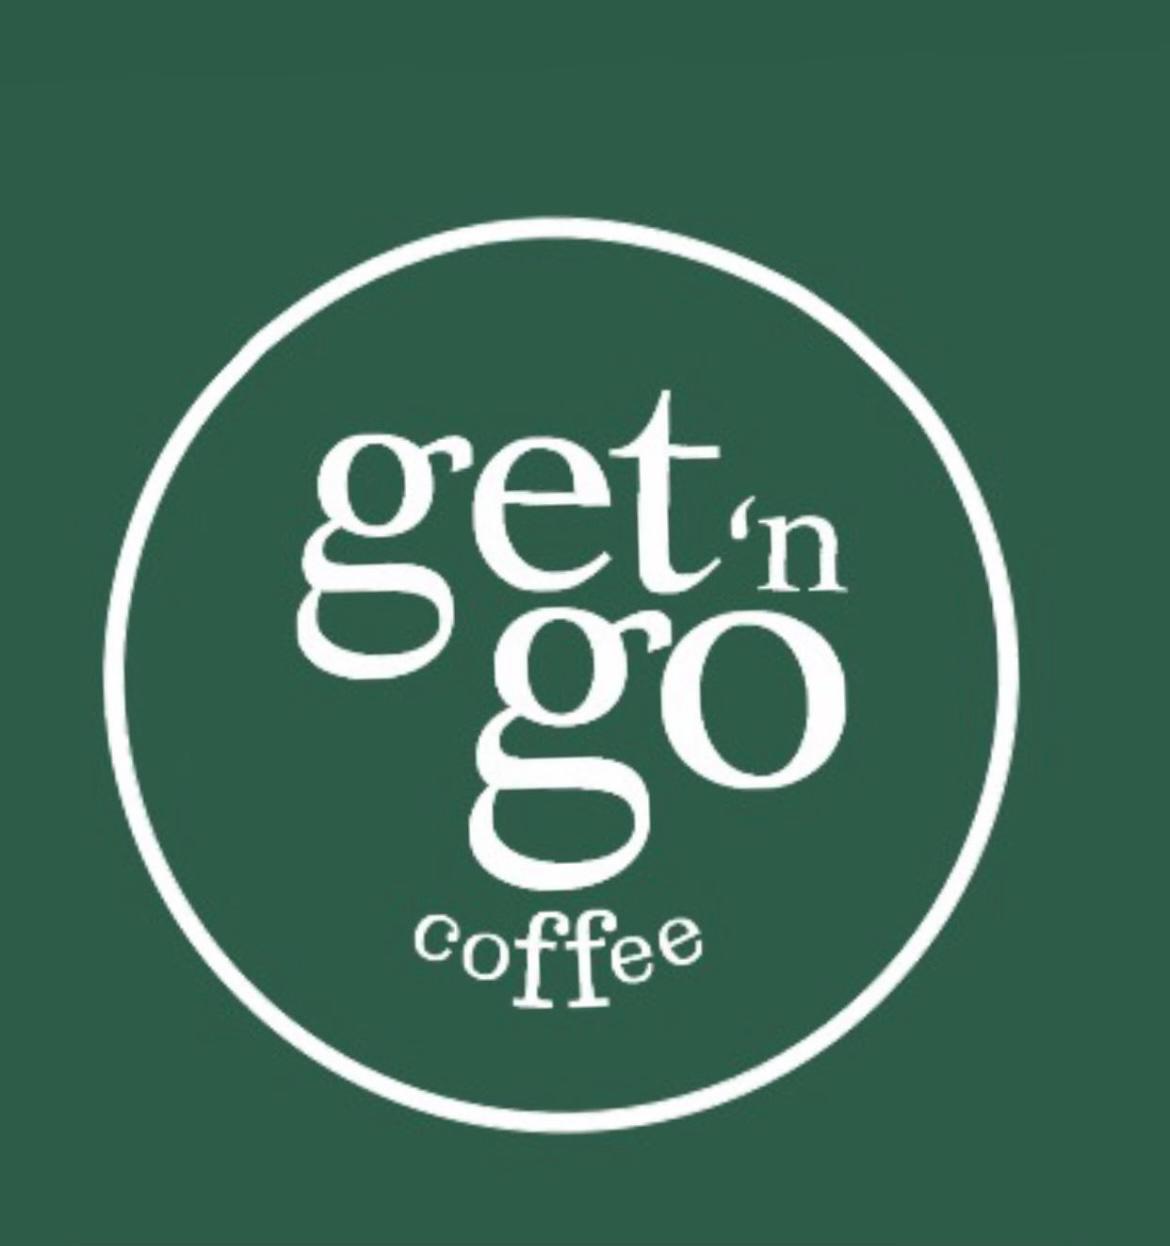 Get'n Go Coffee